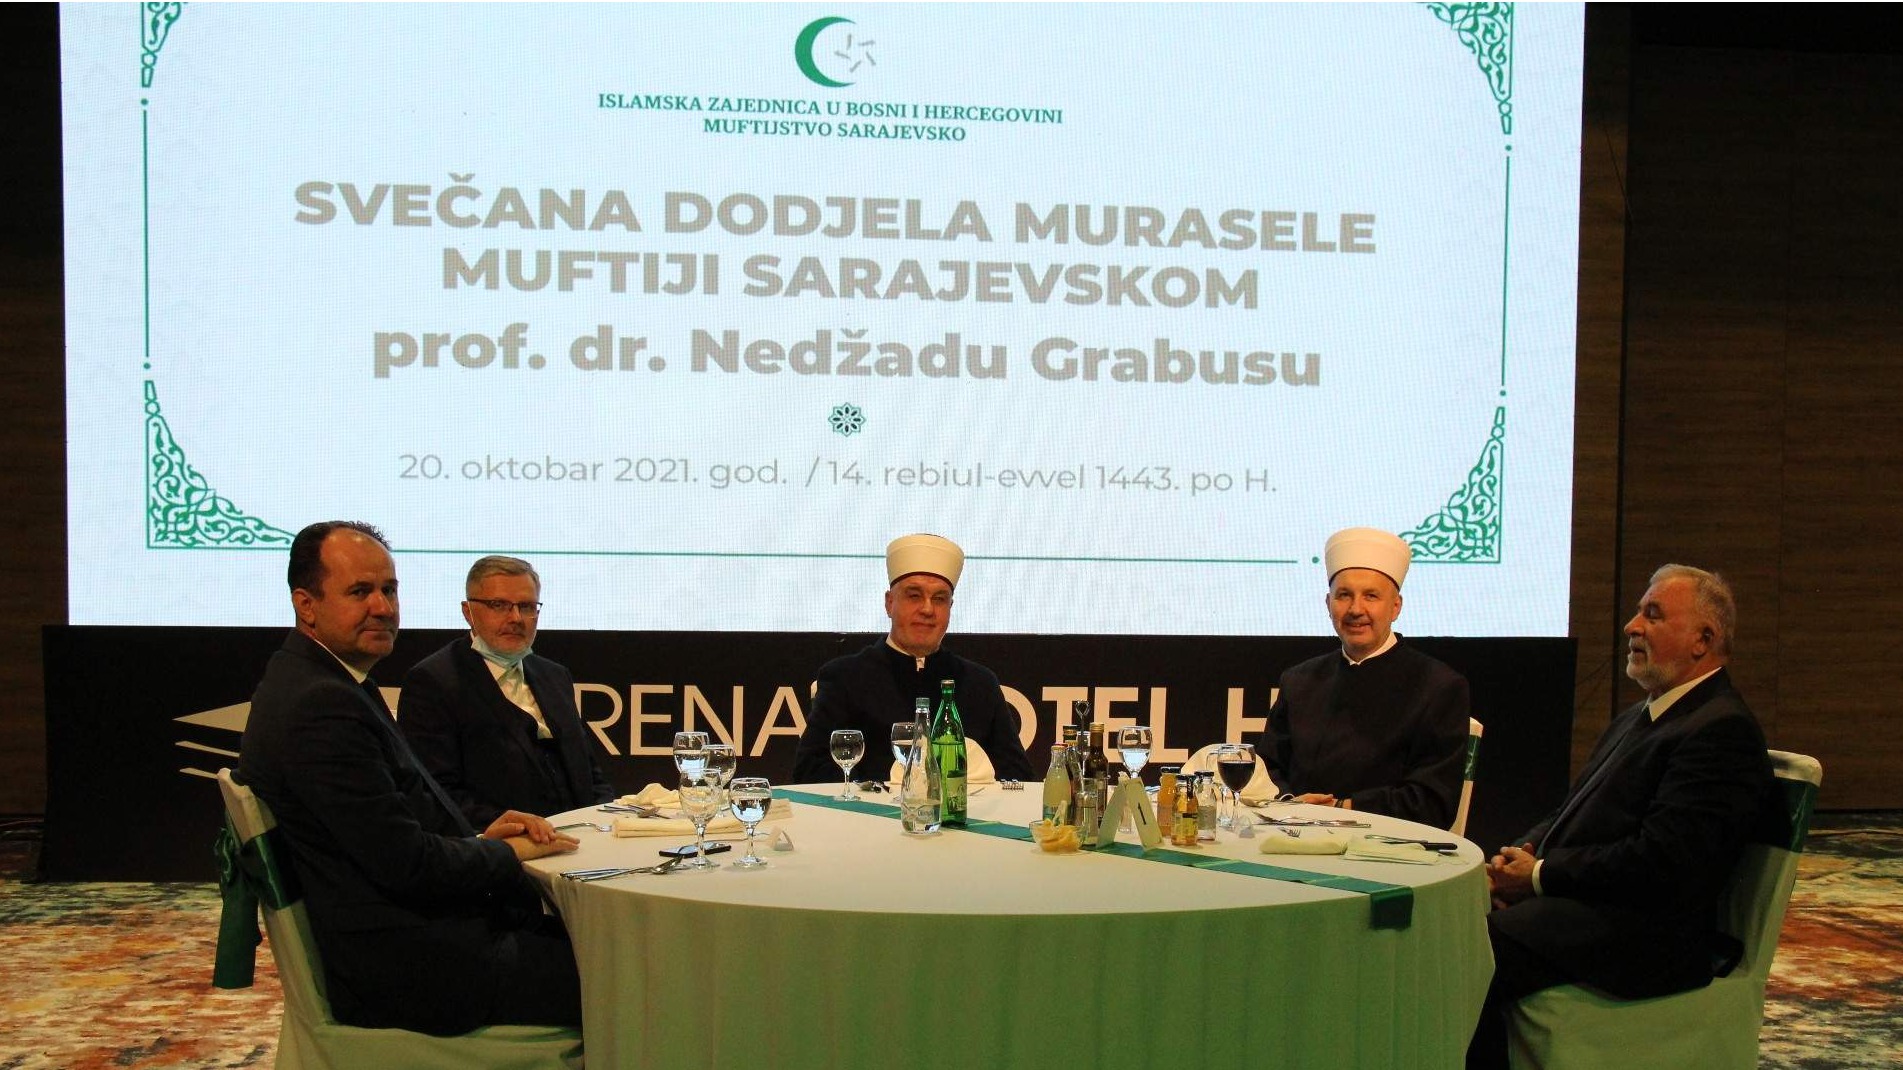 Svečani prijem povodom dodjele murasele muftiji sarajevskom dr. Nedžad-ef. Grabusu